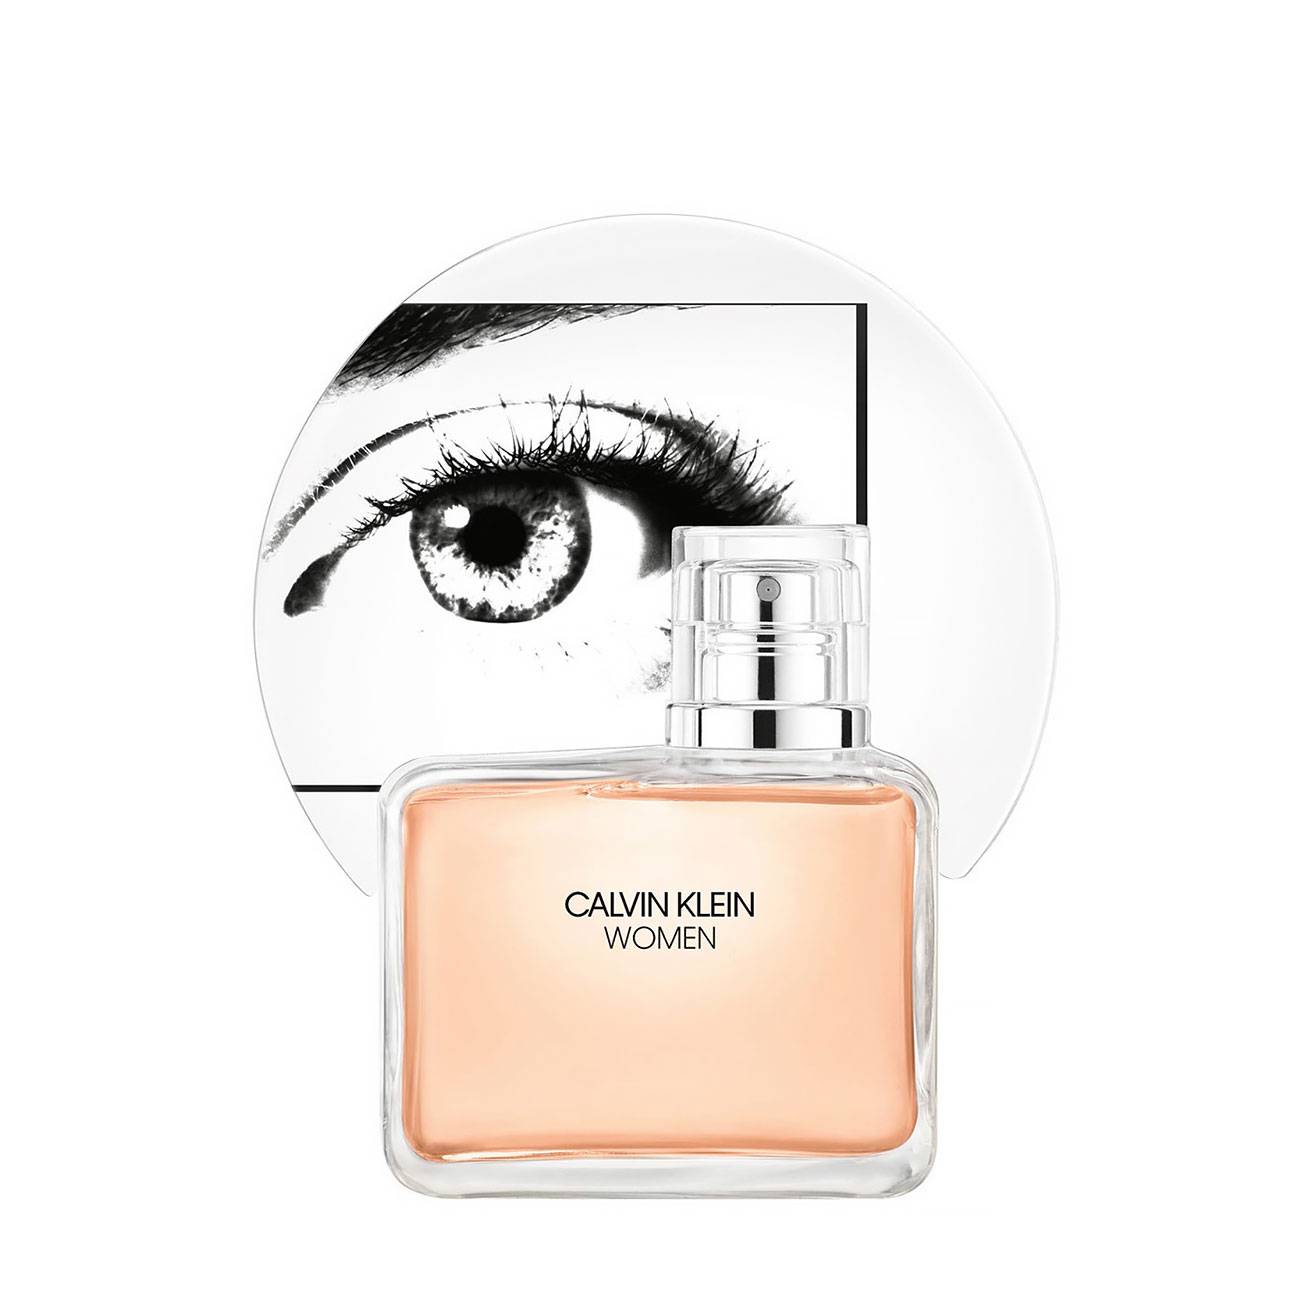 Apa de Parfum Calvin Klein WOMEN INTENSE 100ml cu comanda online